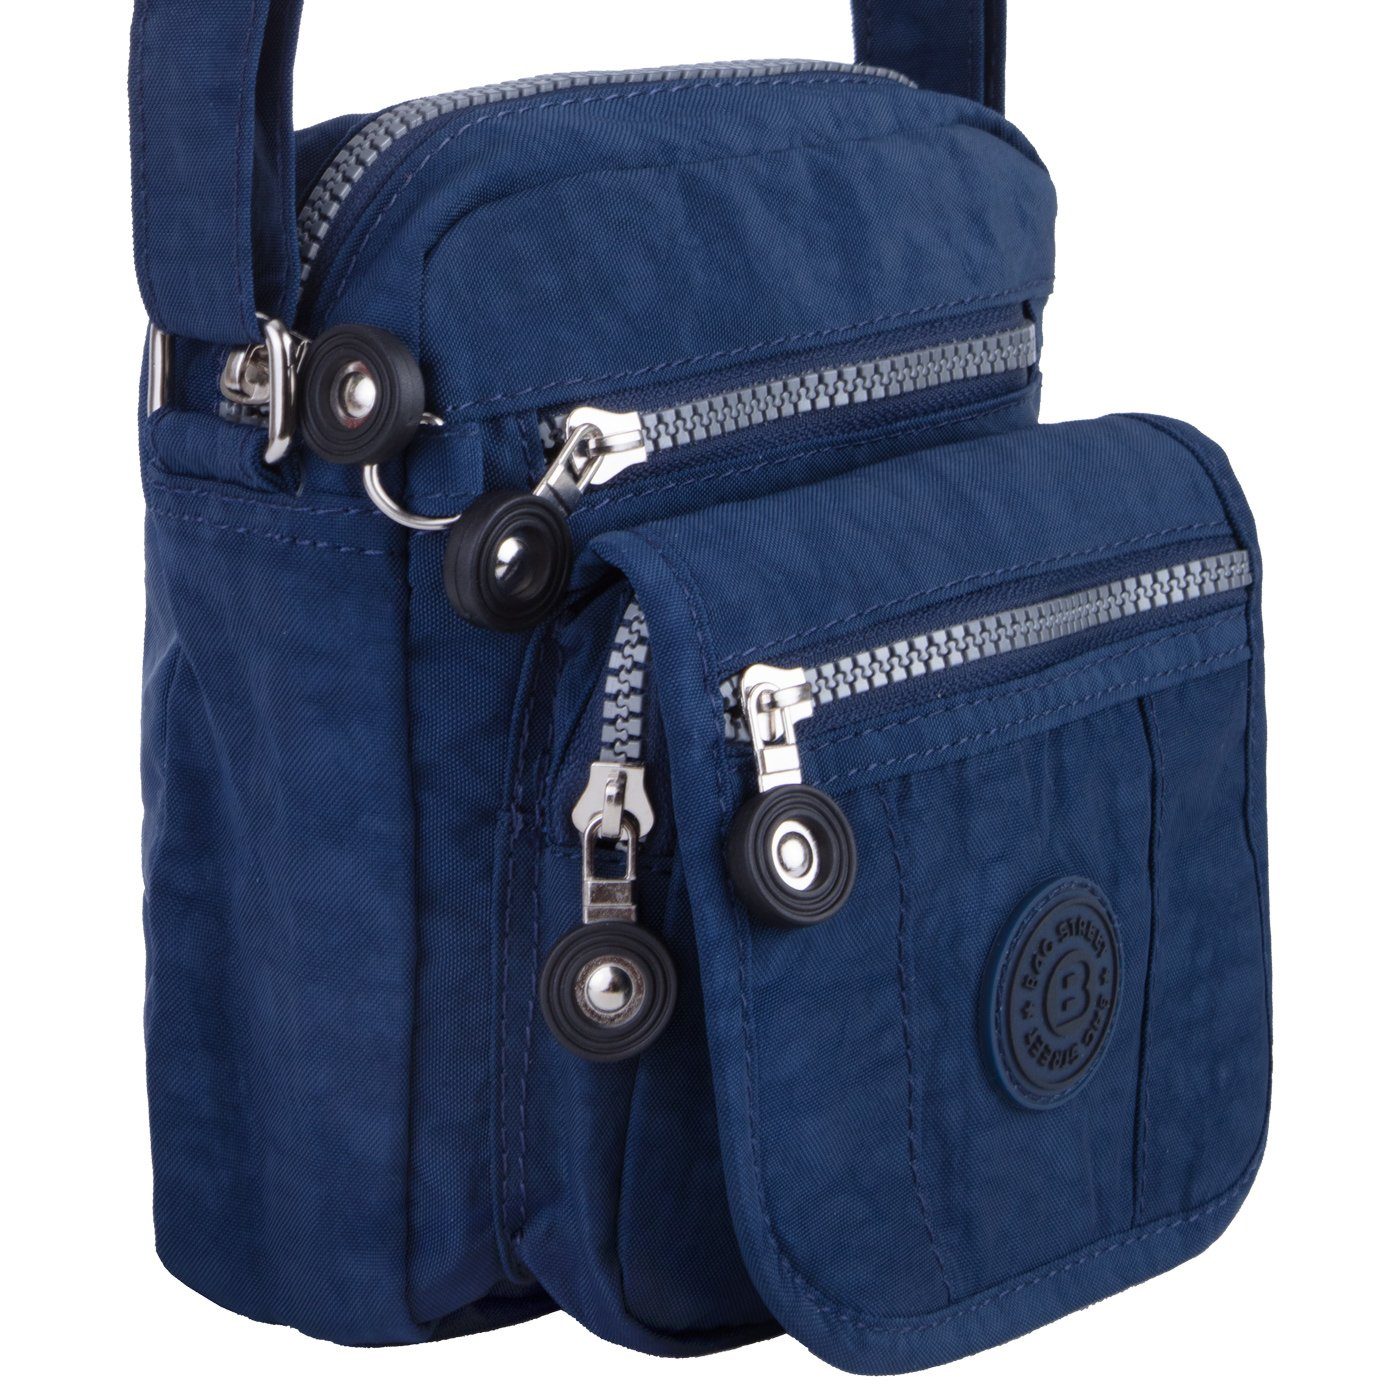 blau Umhänge-Tasche Henkeltasche, 4-Fächer Bag sportive Urlaub City-Tasche Kleine compagno Reise